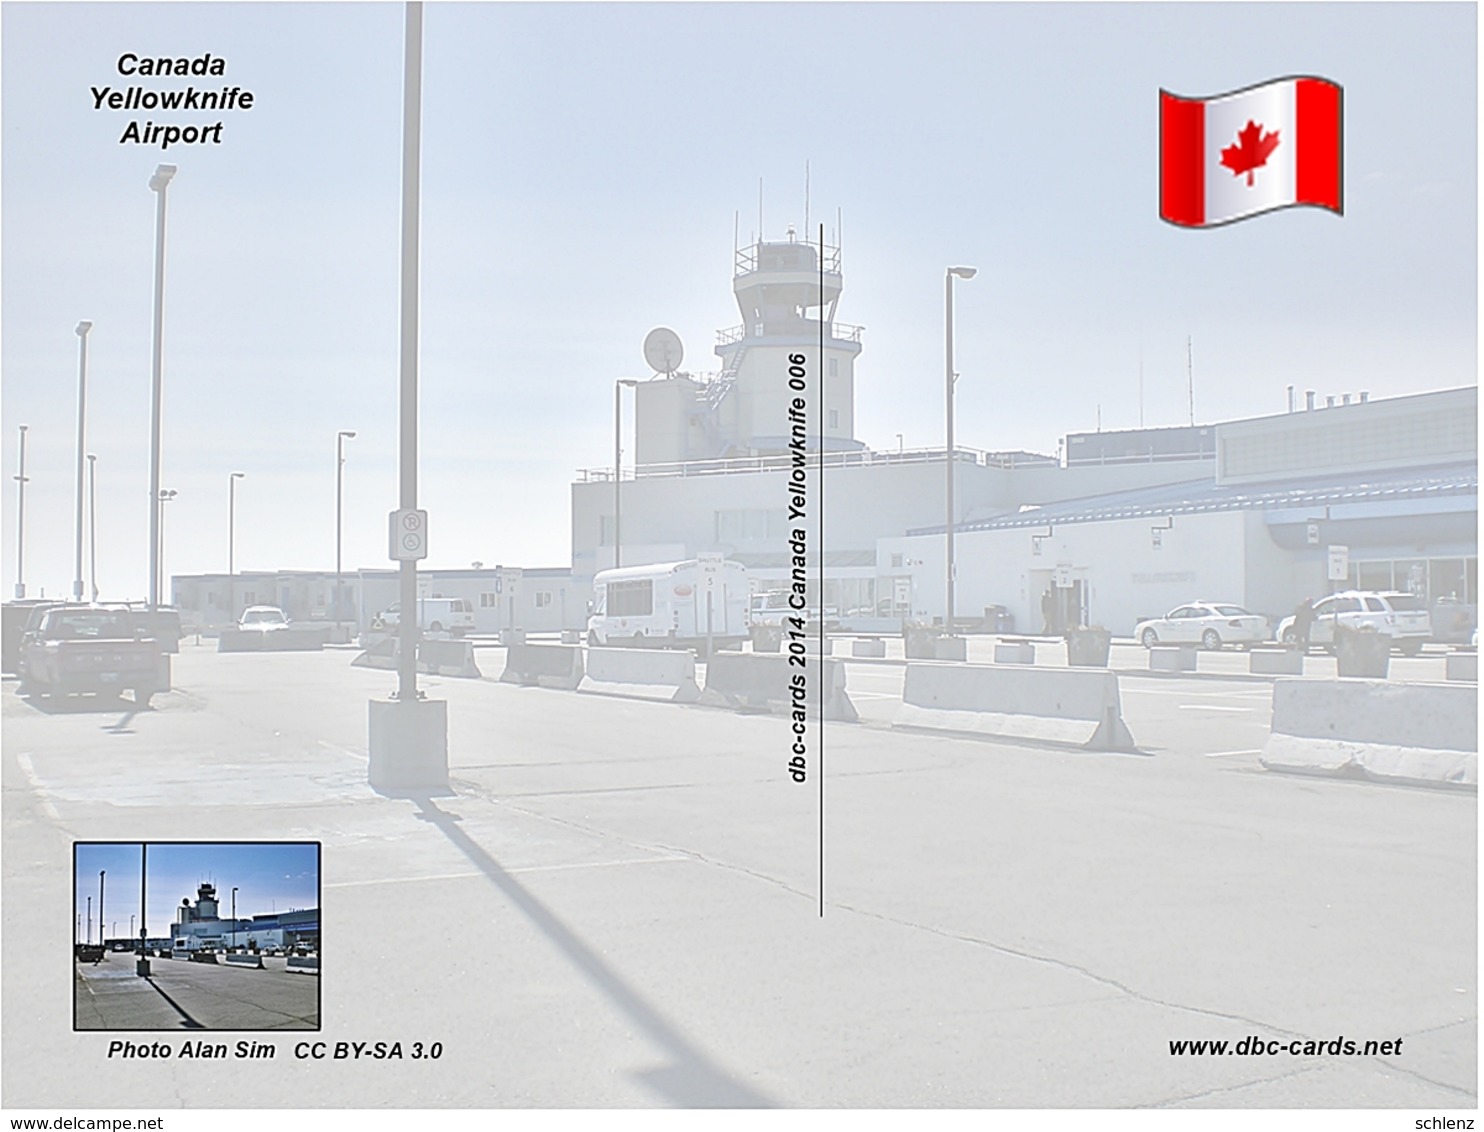 Yellowknife Kanada Airport - Yellowknife